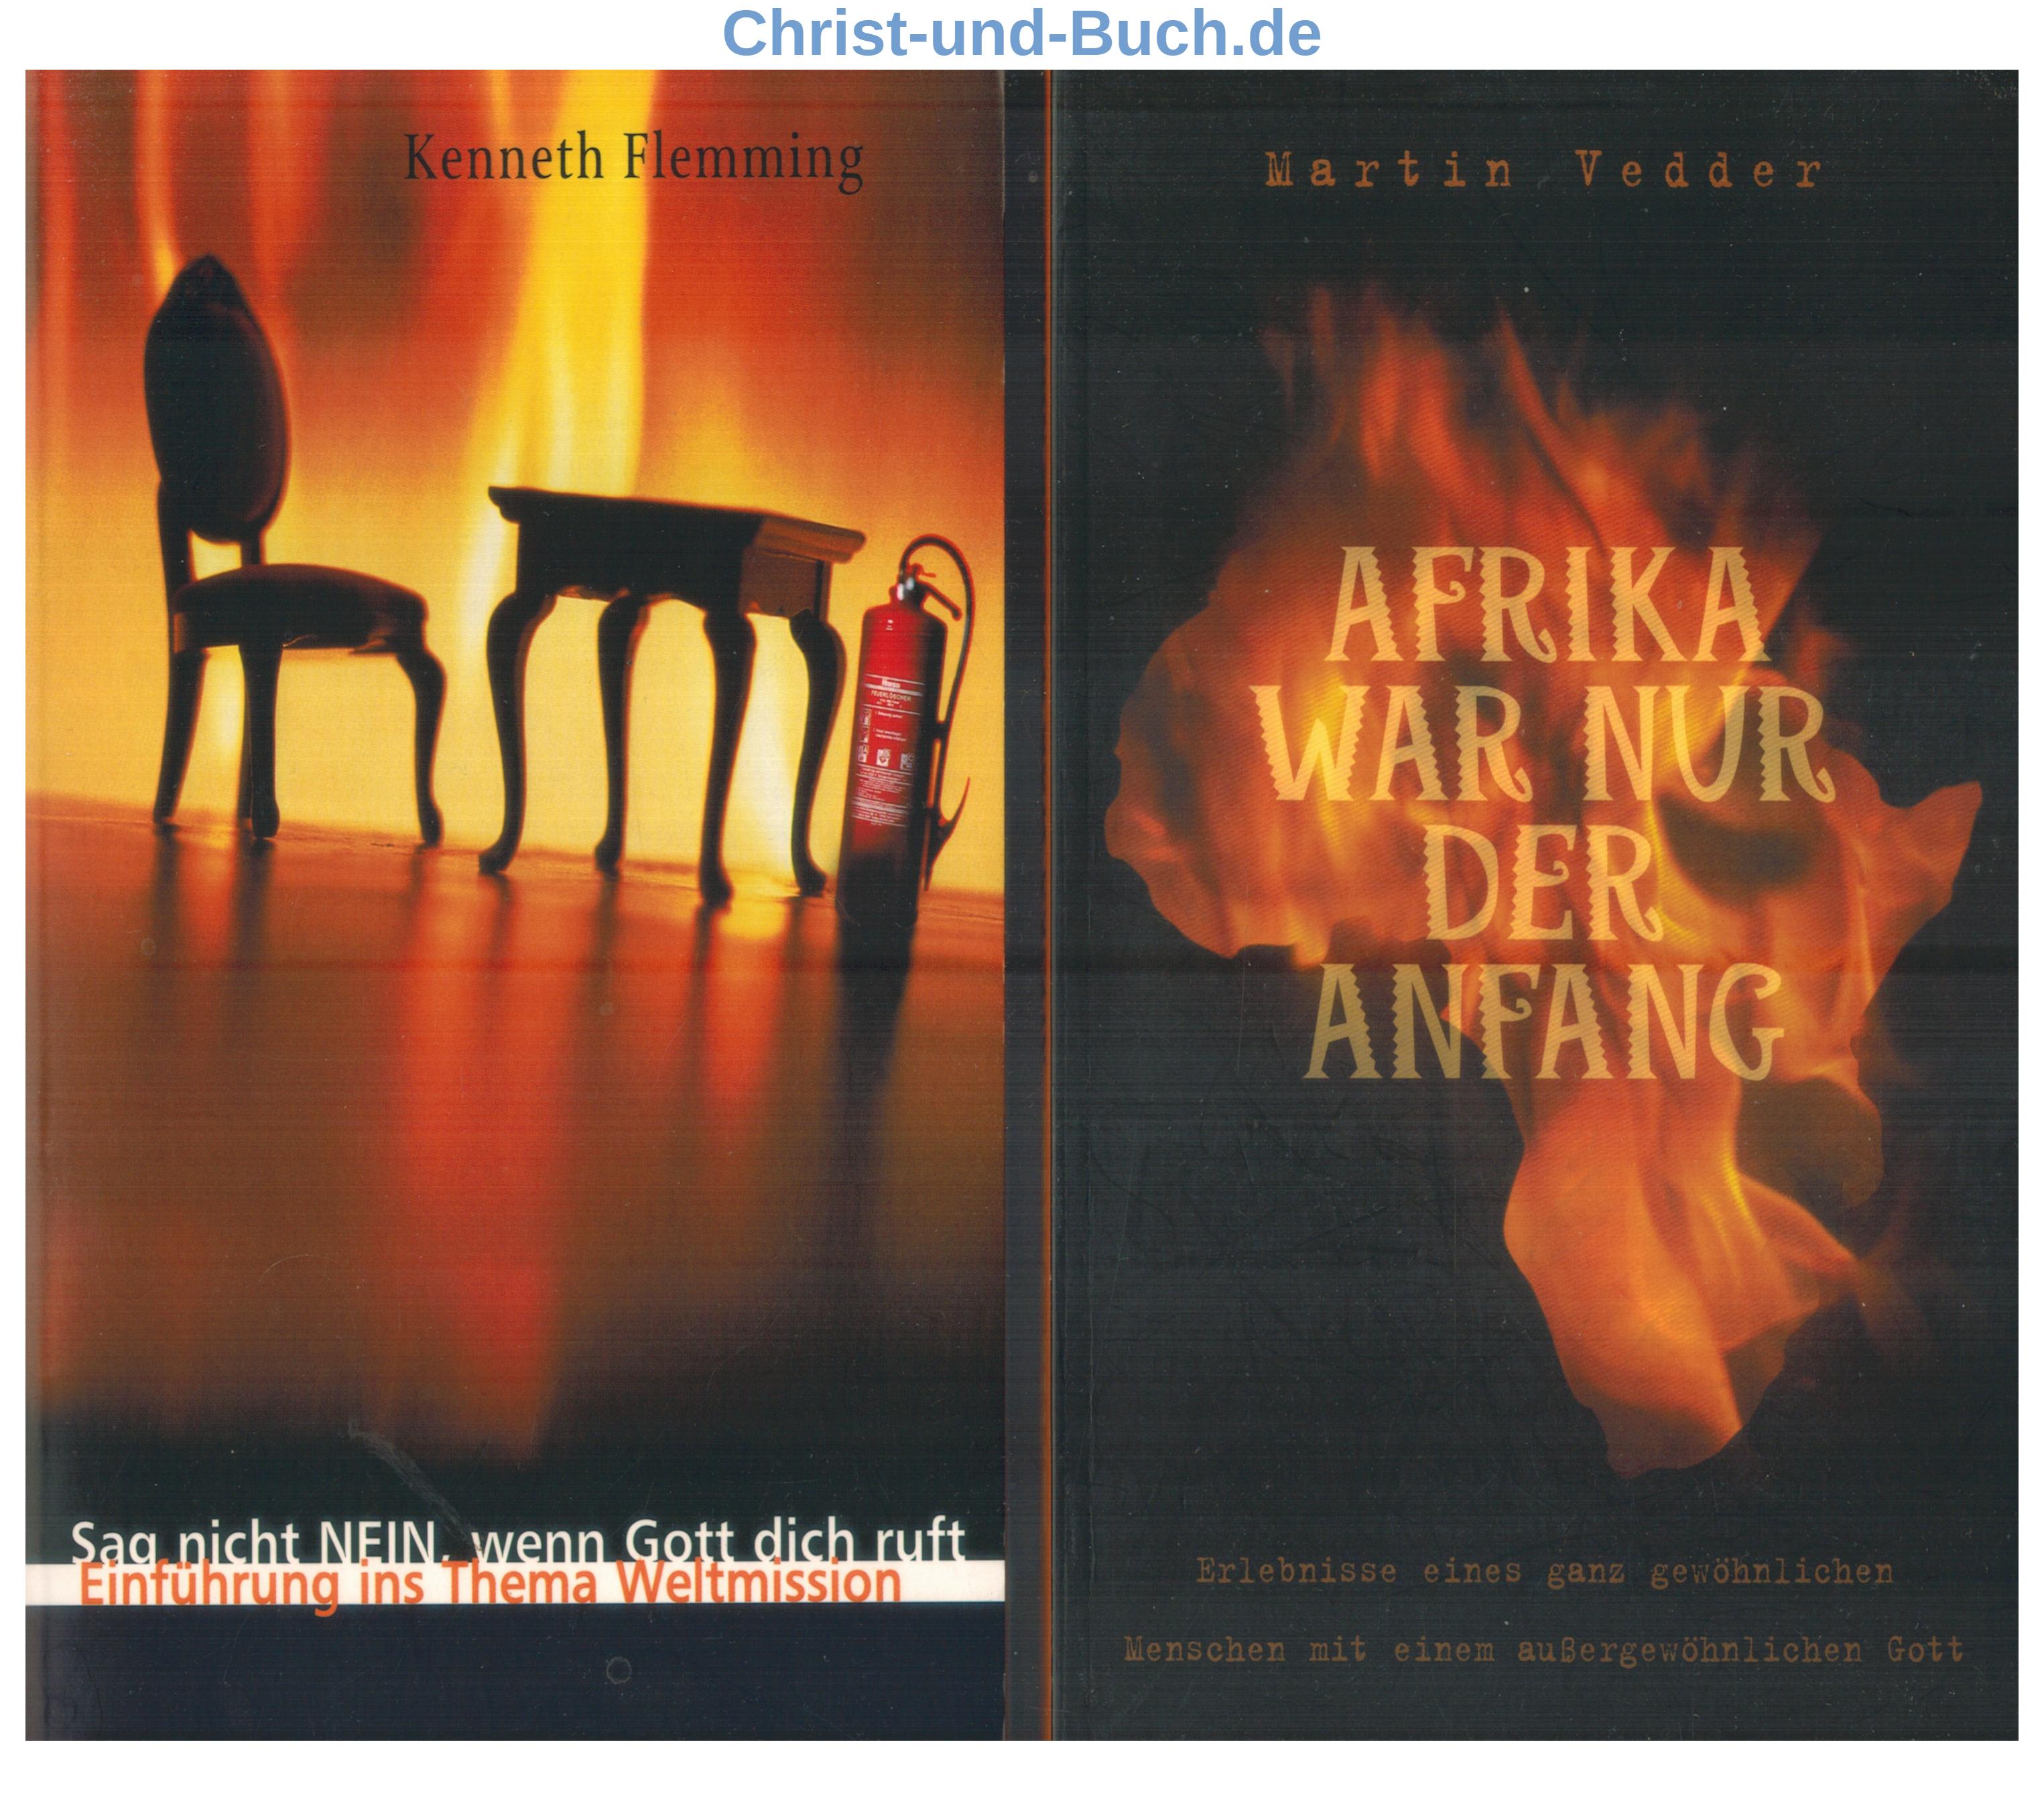 Sag nicht Nein, wenn Gott dich ruft - Einführung ins Thema Weltmission, Kenneth Flemming + Afrika war nur der Anfang, Martin Vedder Buchpaket #V